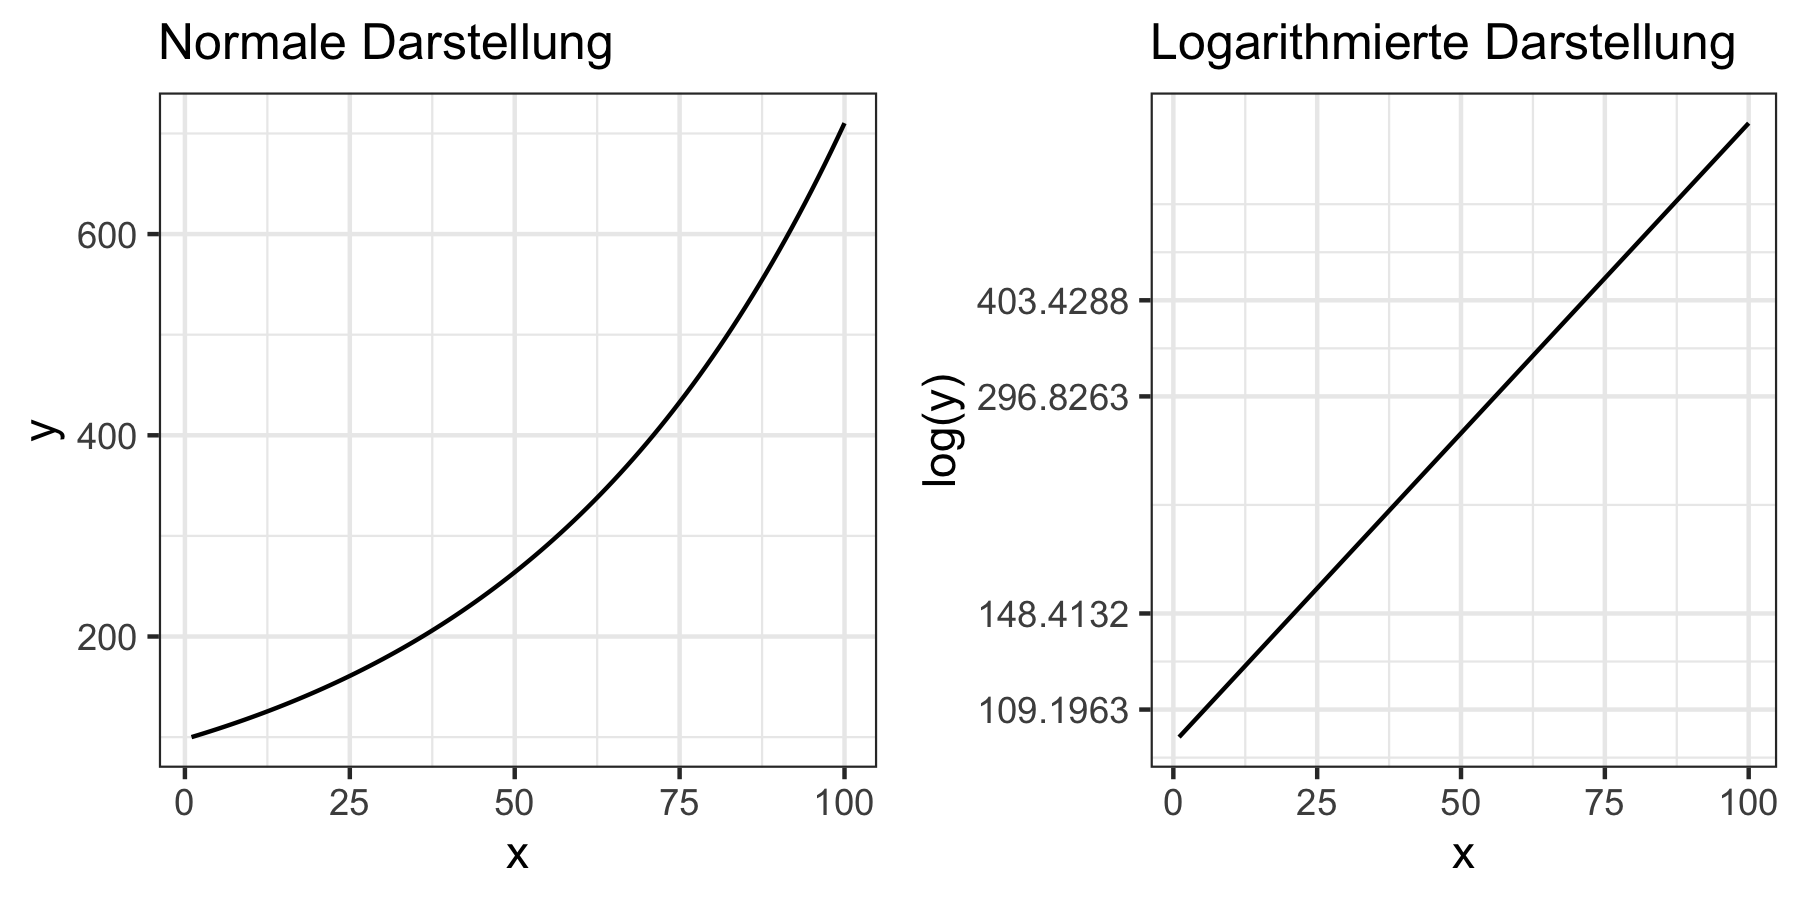 Vergleich normaler und logarithmierter Darstellung